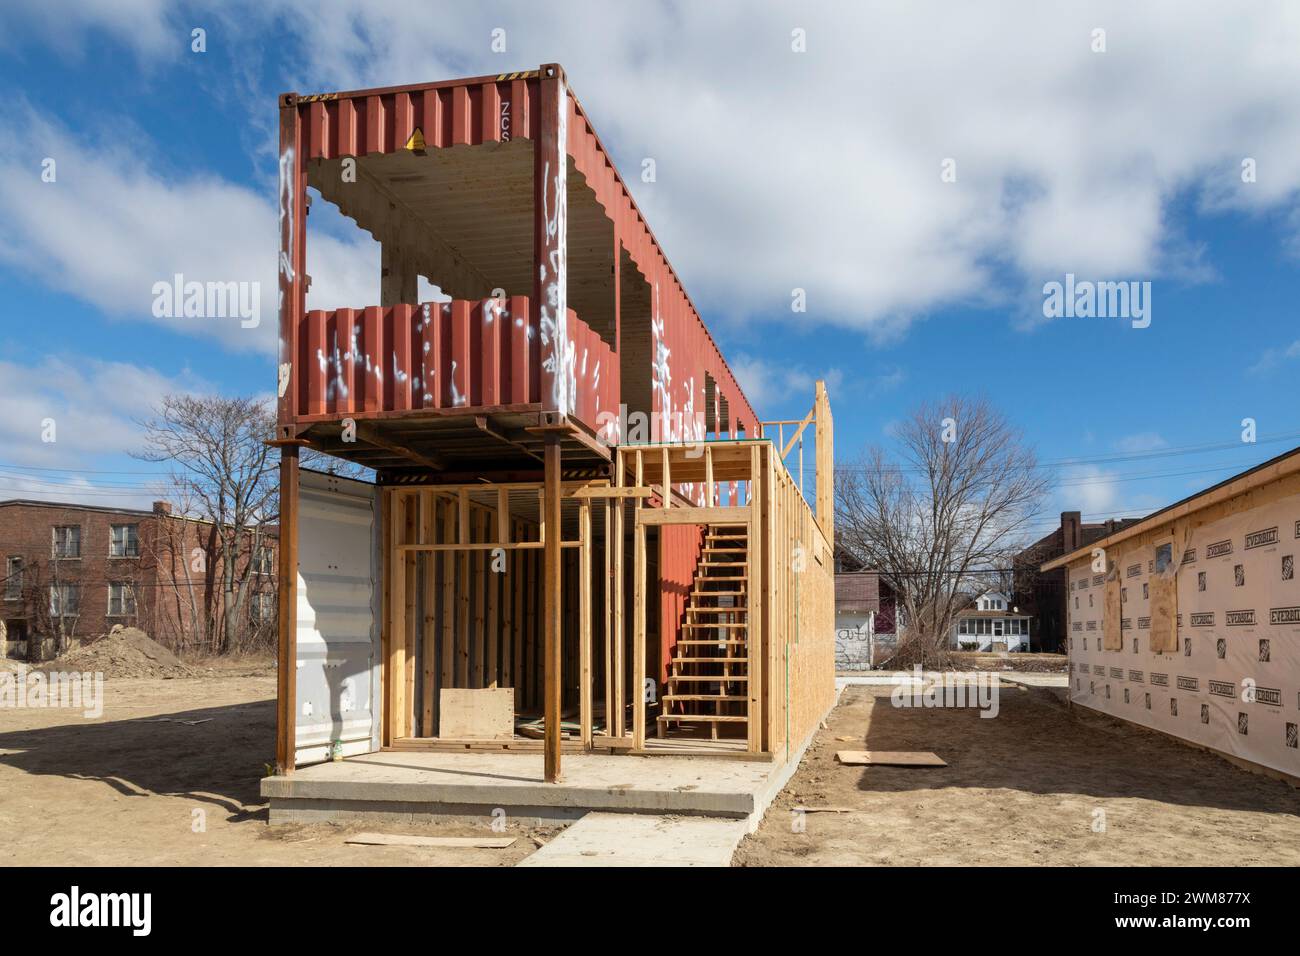 Detroit, Michigan - Se están construyendo casas con contenedores de envío usados en un vecindario de bajos ingresos. Foto de stock